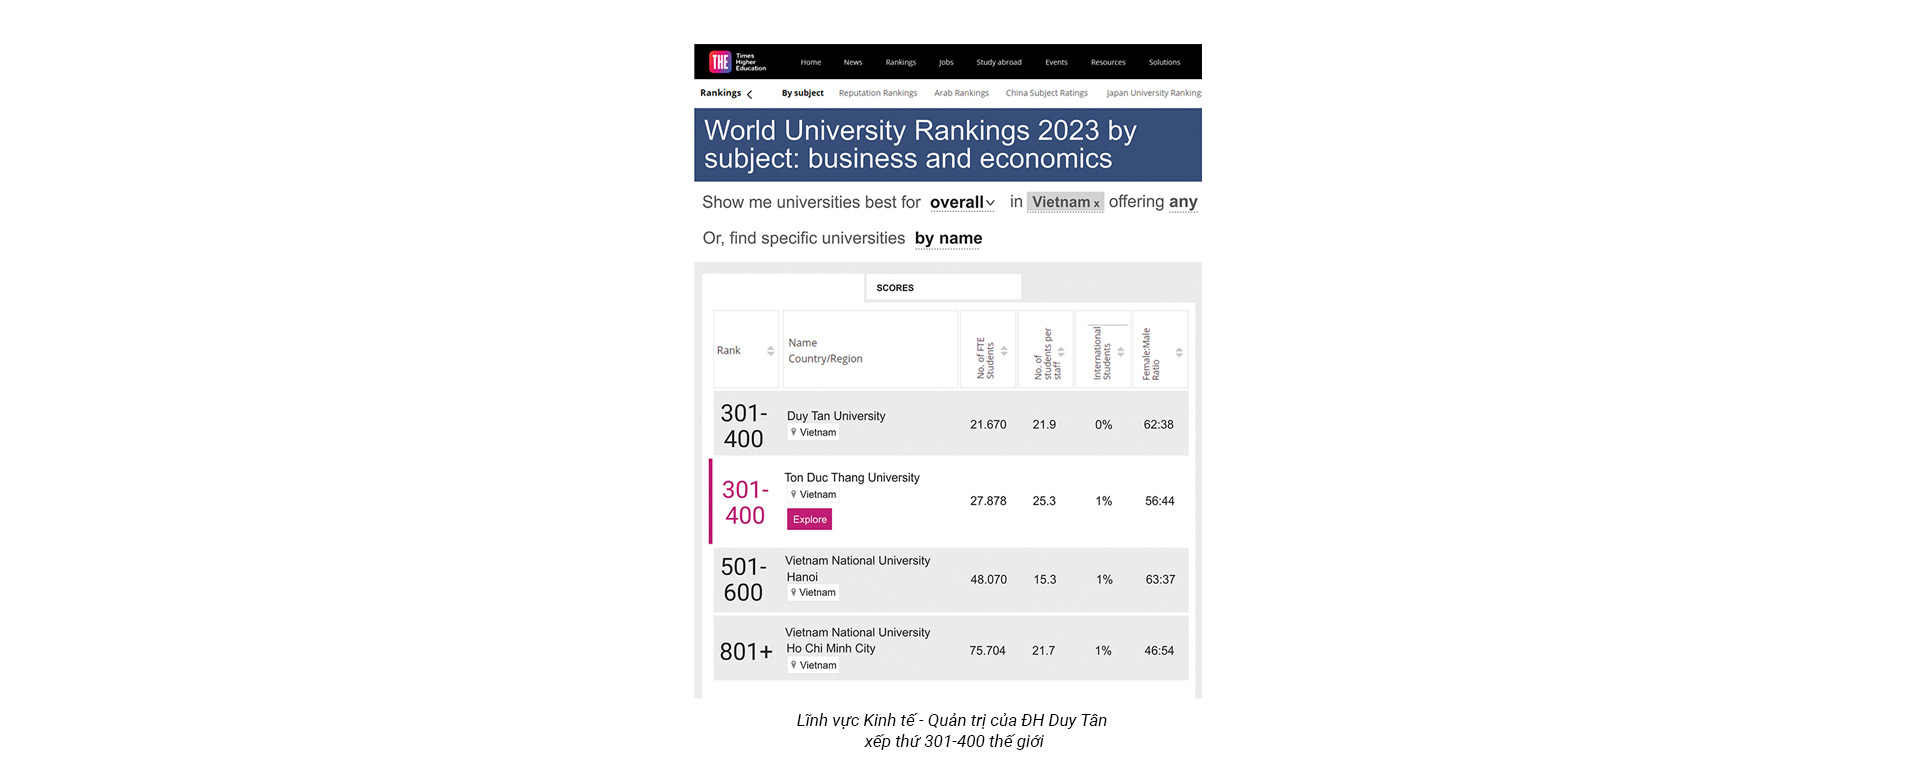 Học Kinh tế - Quản trị ở Đại học Duy Tân với các chương trình thuộc top 400 thế giới theo The World - Ảnh 2.